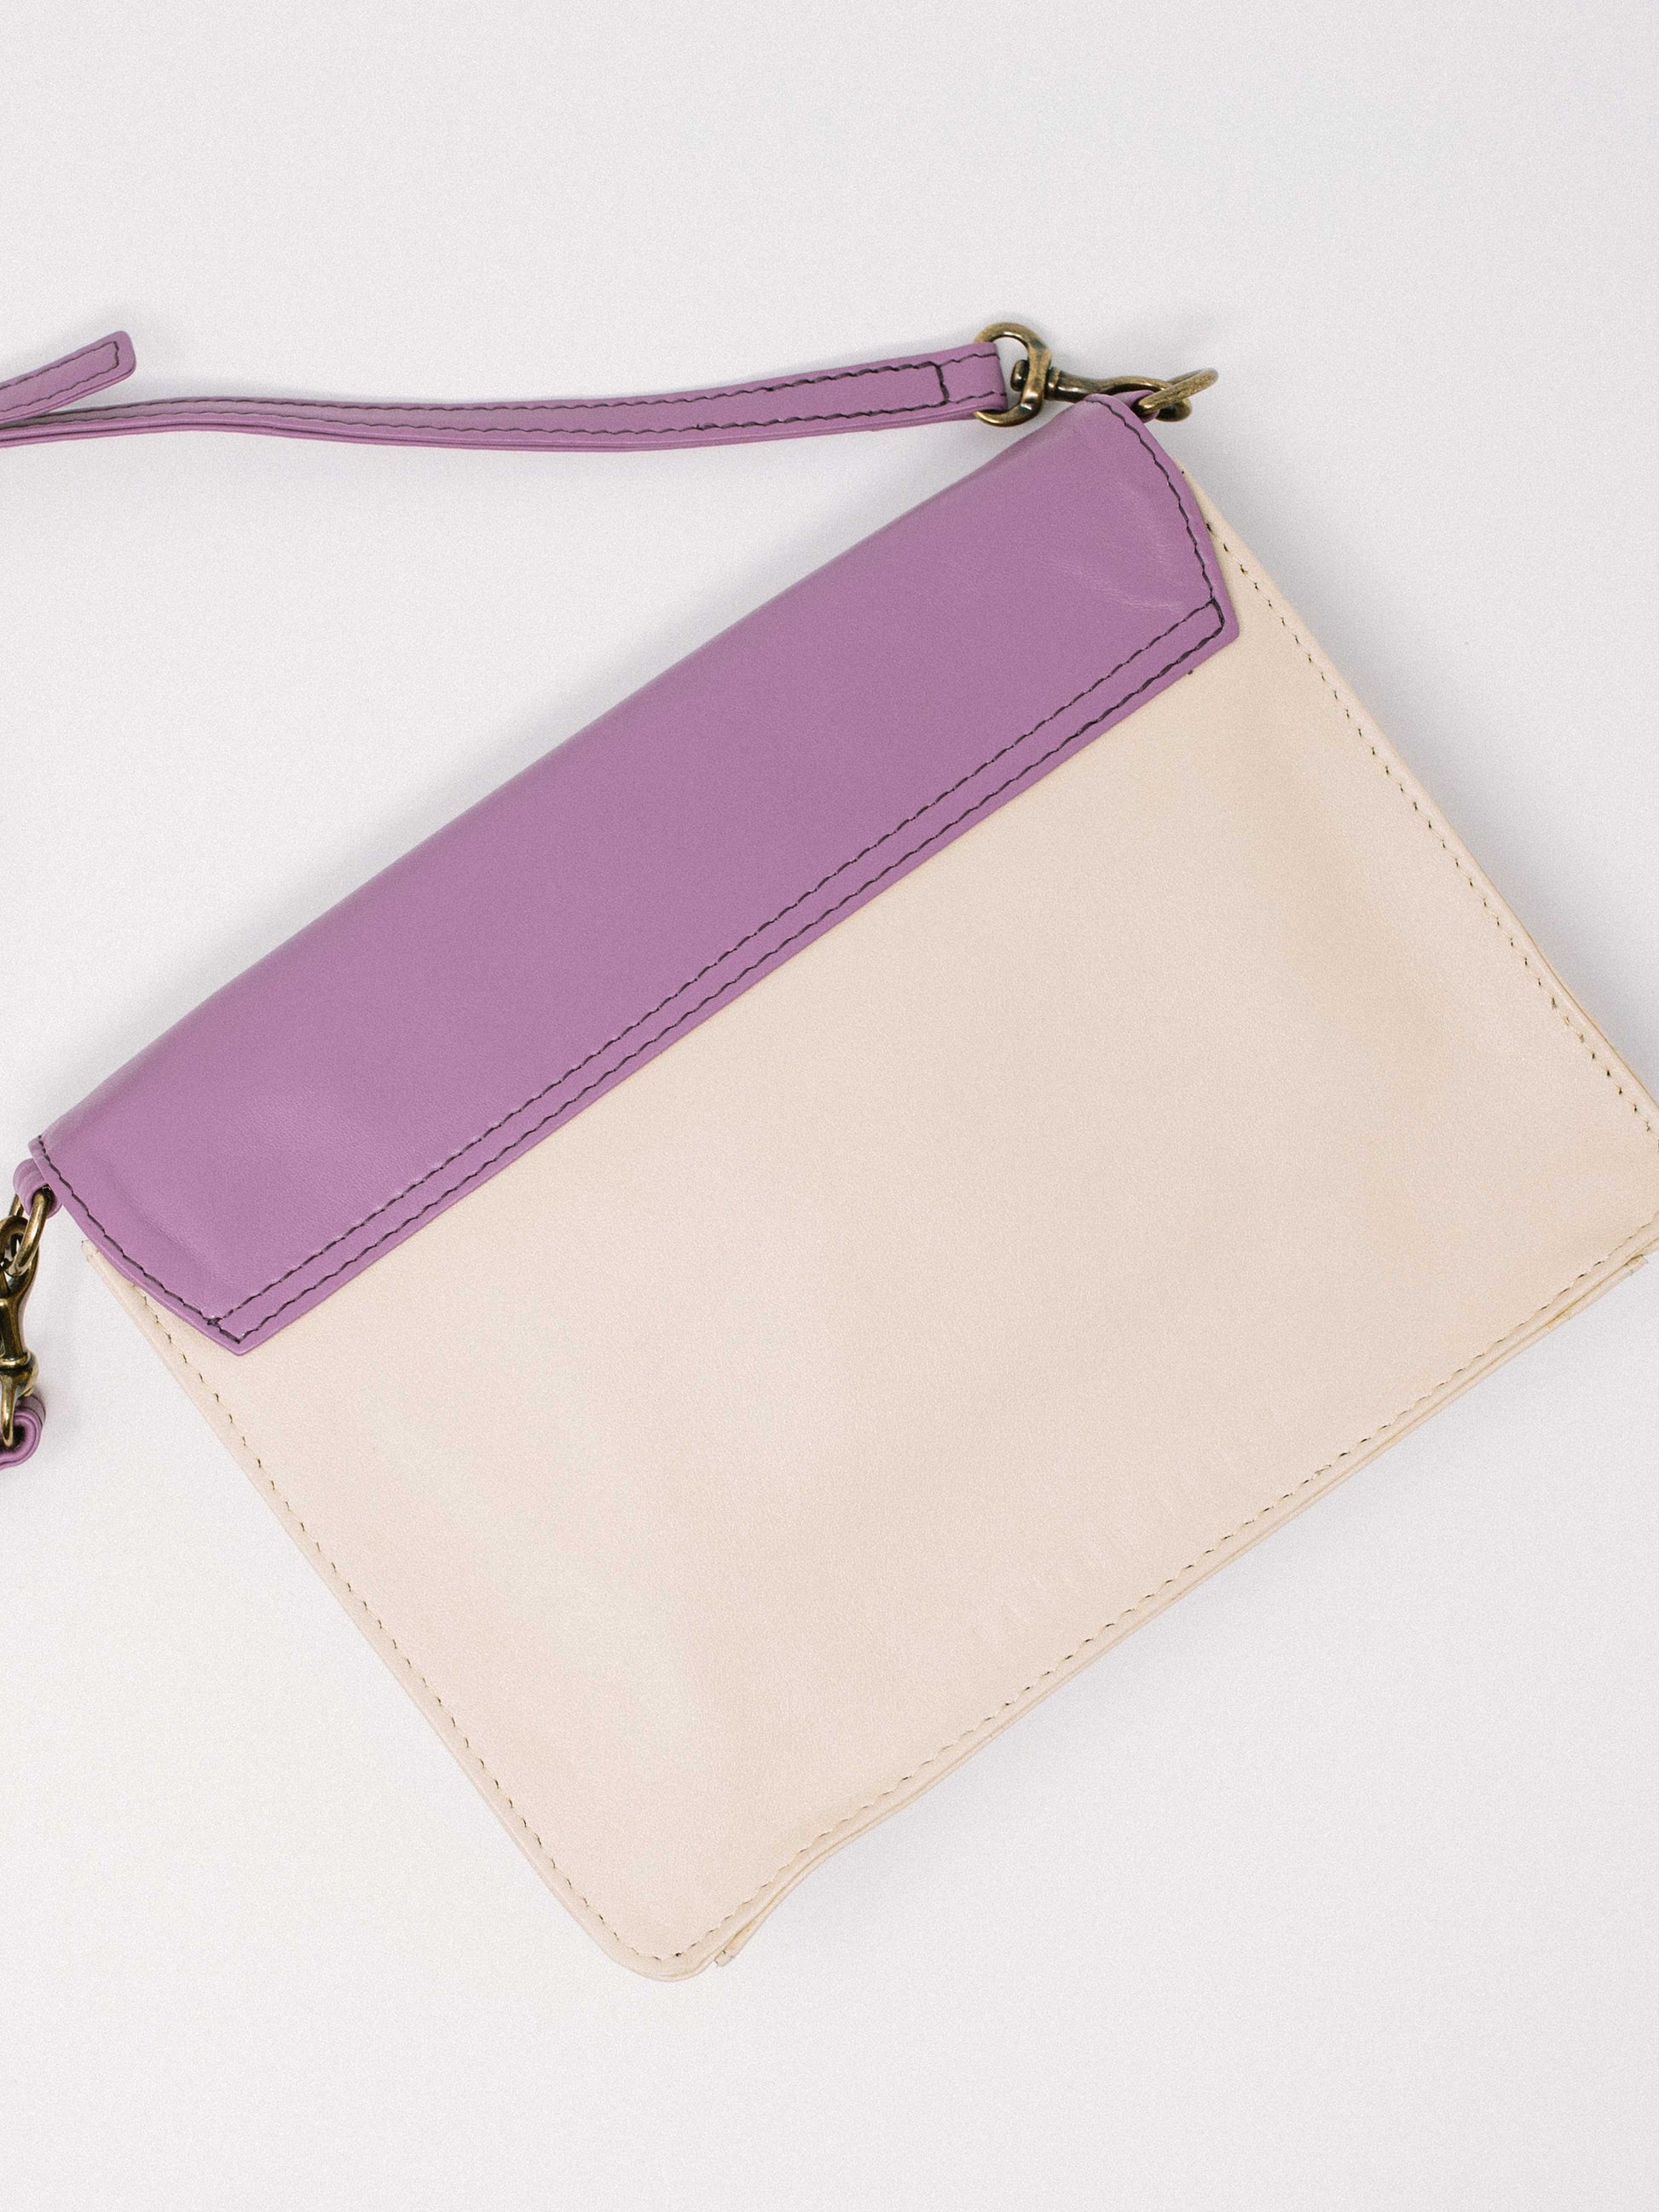 Lavender Leather Crossbody Wallet bag- back of bag- by Payton James Nashville Handbag designer